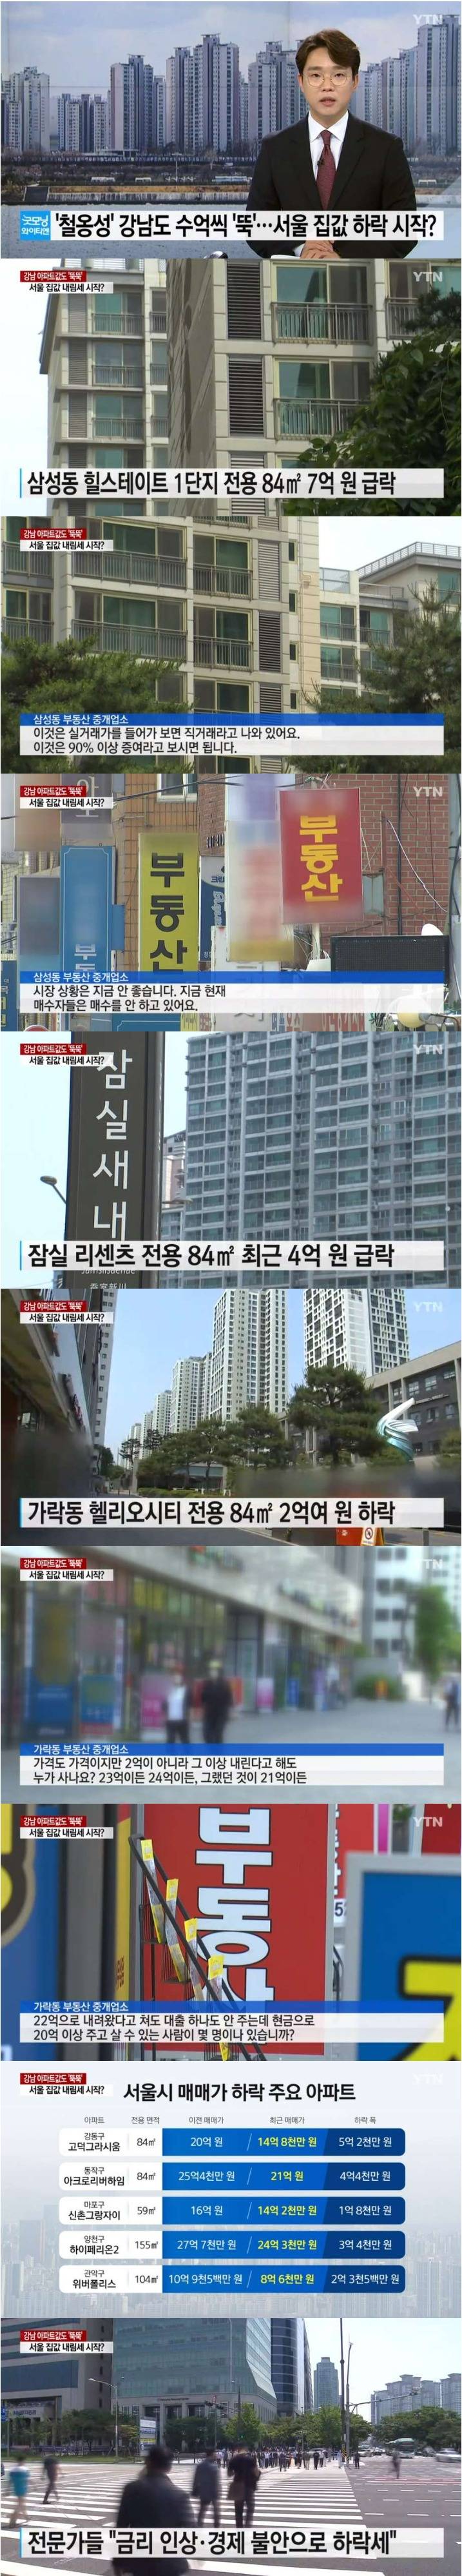 서울도 아파트 가격 하락 본격화